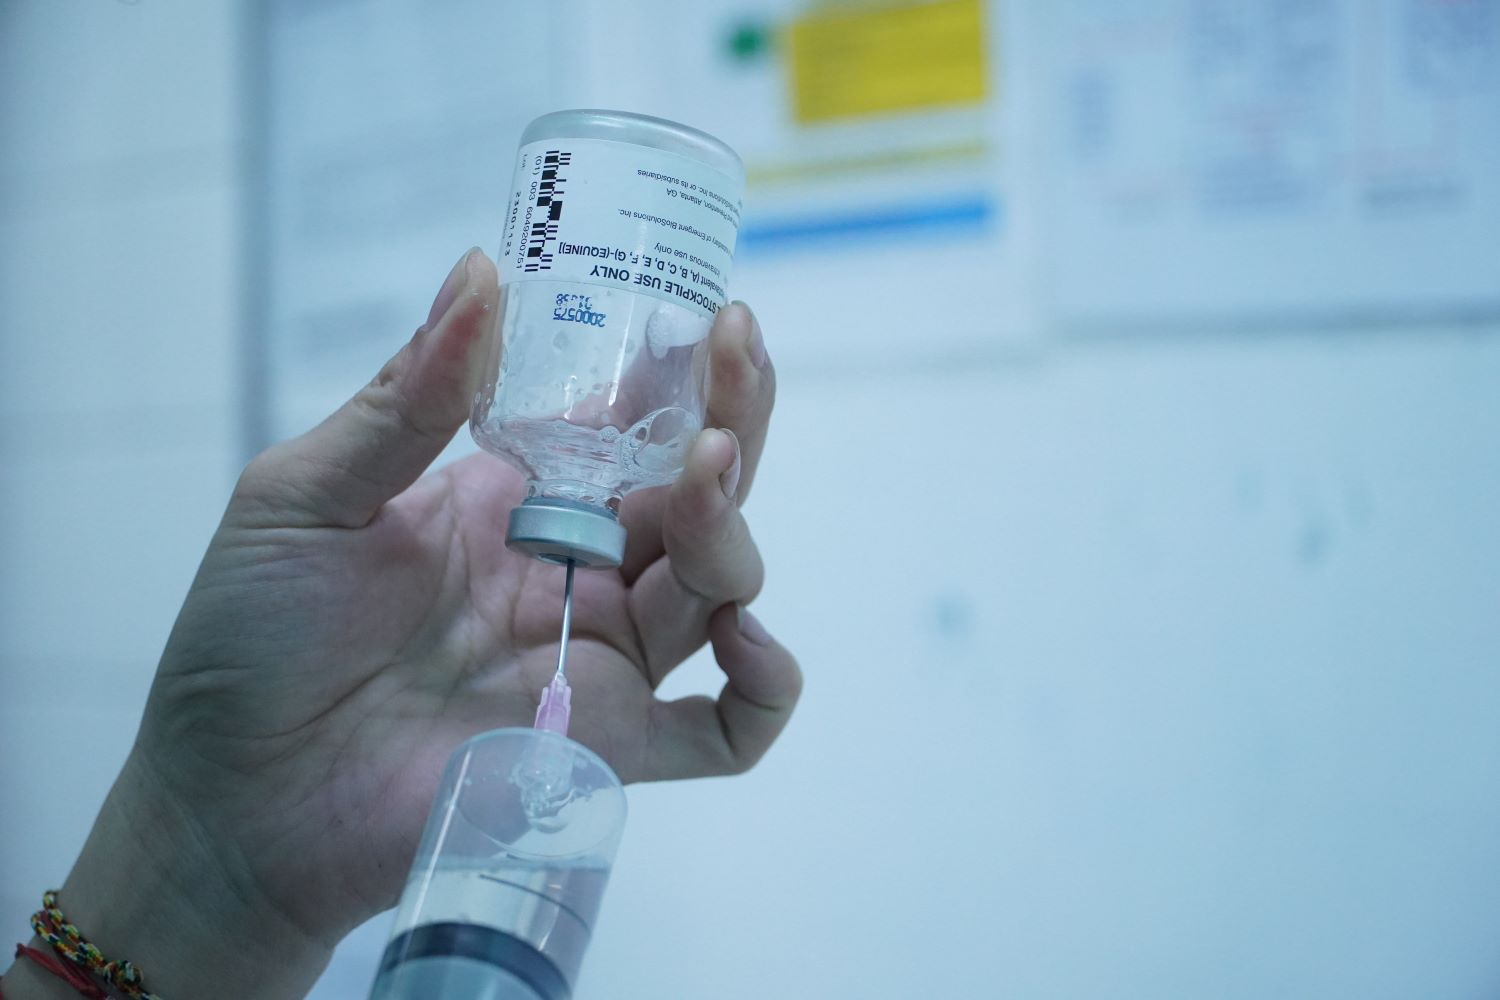 Hiện Việt Nam chỉ còn 2 lọ thuốc Botulism antitoxin heptavalent (BAT) giá mỗi lọ 8.000 USD.